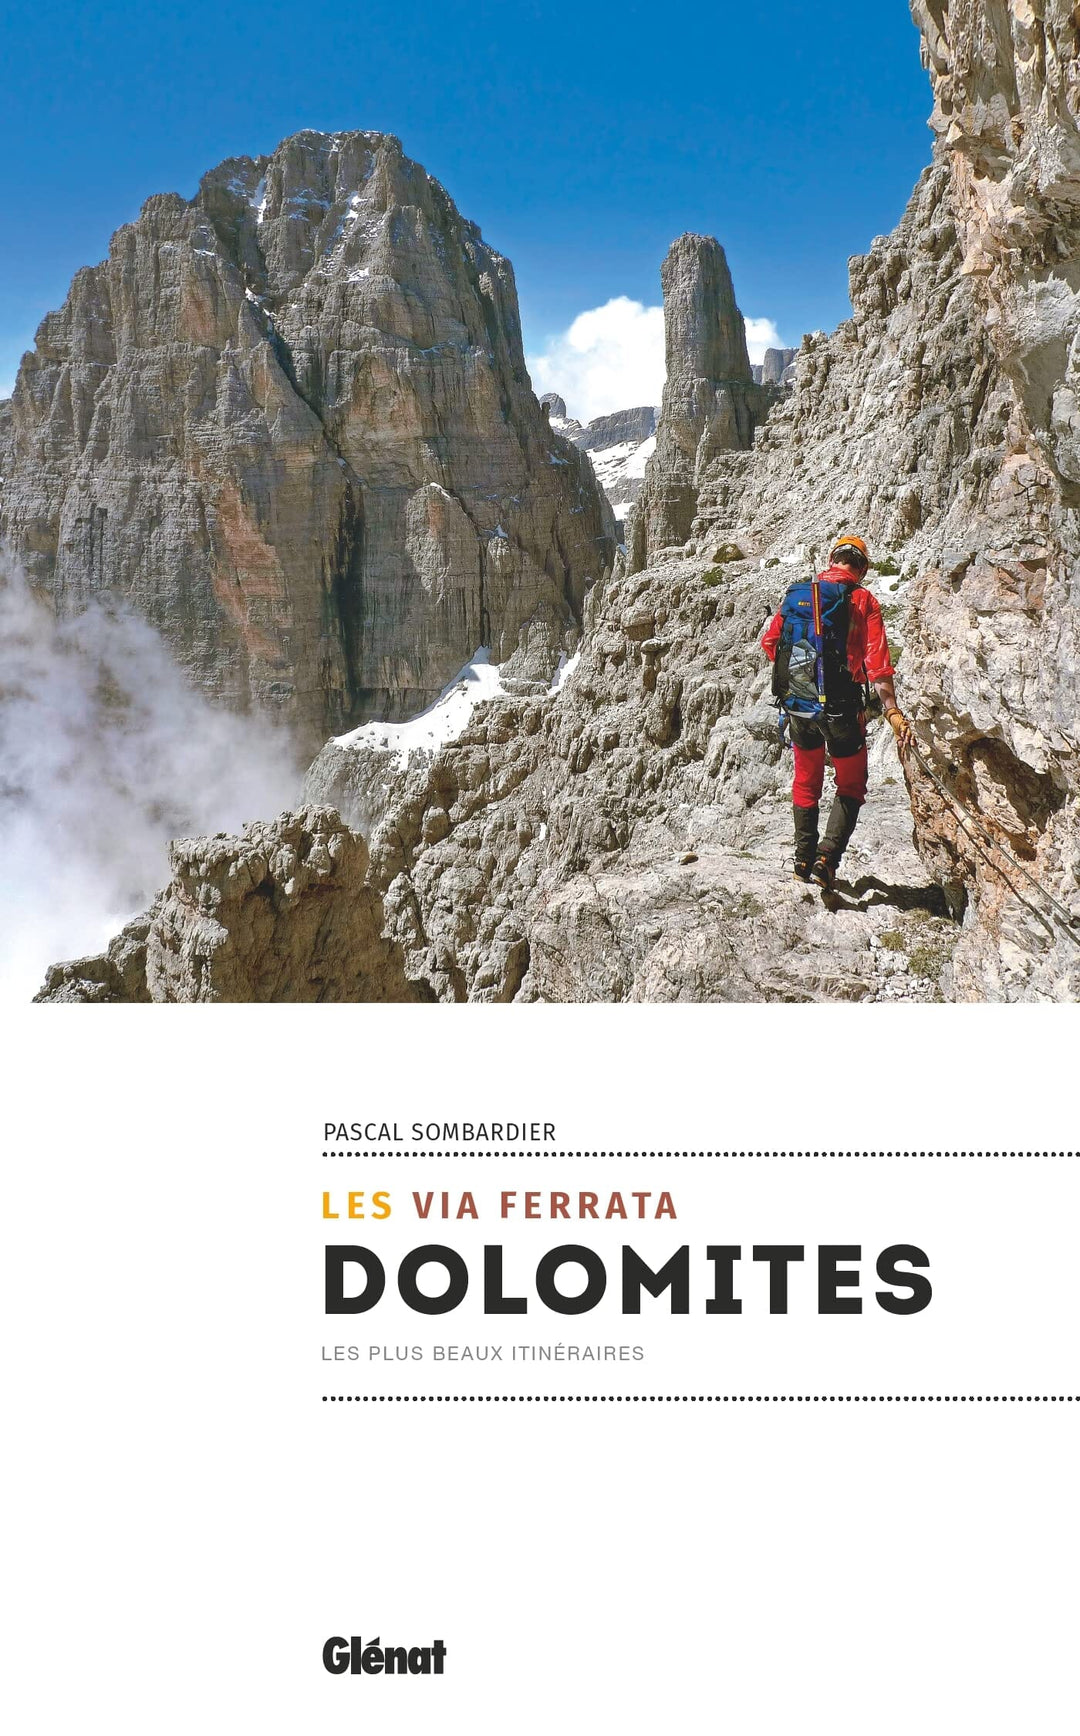 Guide de randonnée - Les via ferrata des Dolomites | Glénat guide de randonnée Glénat 